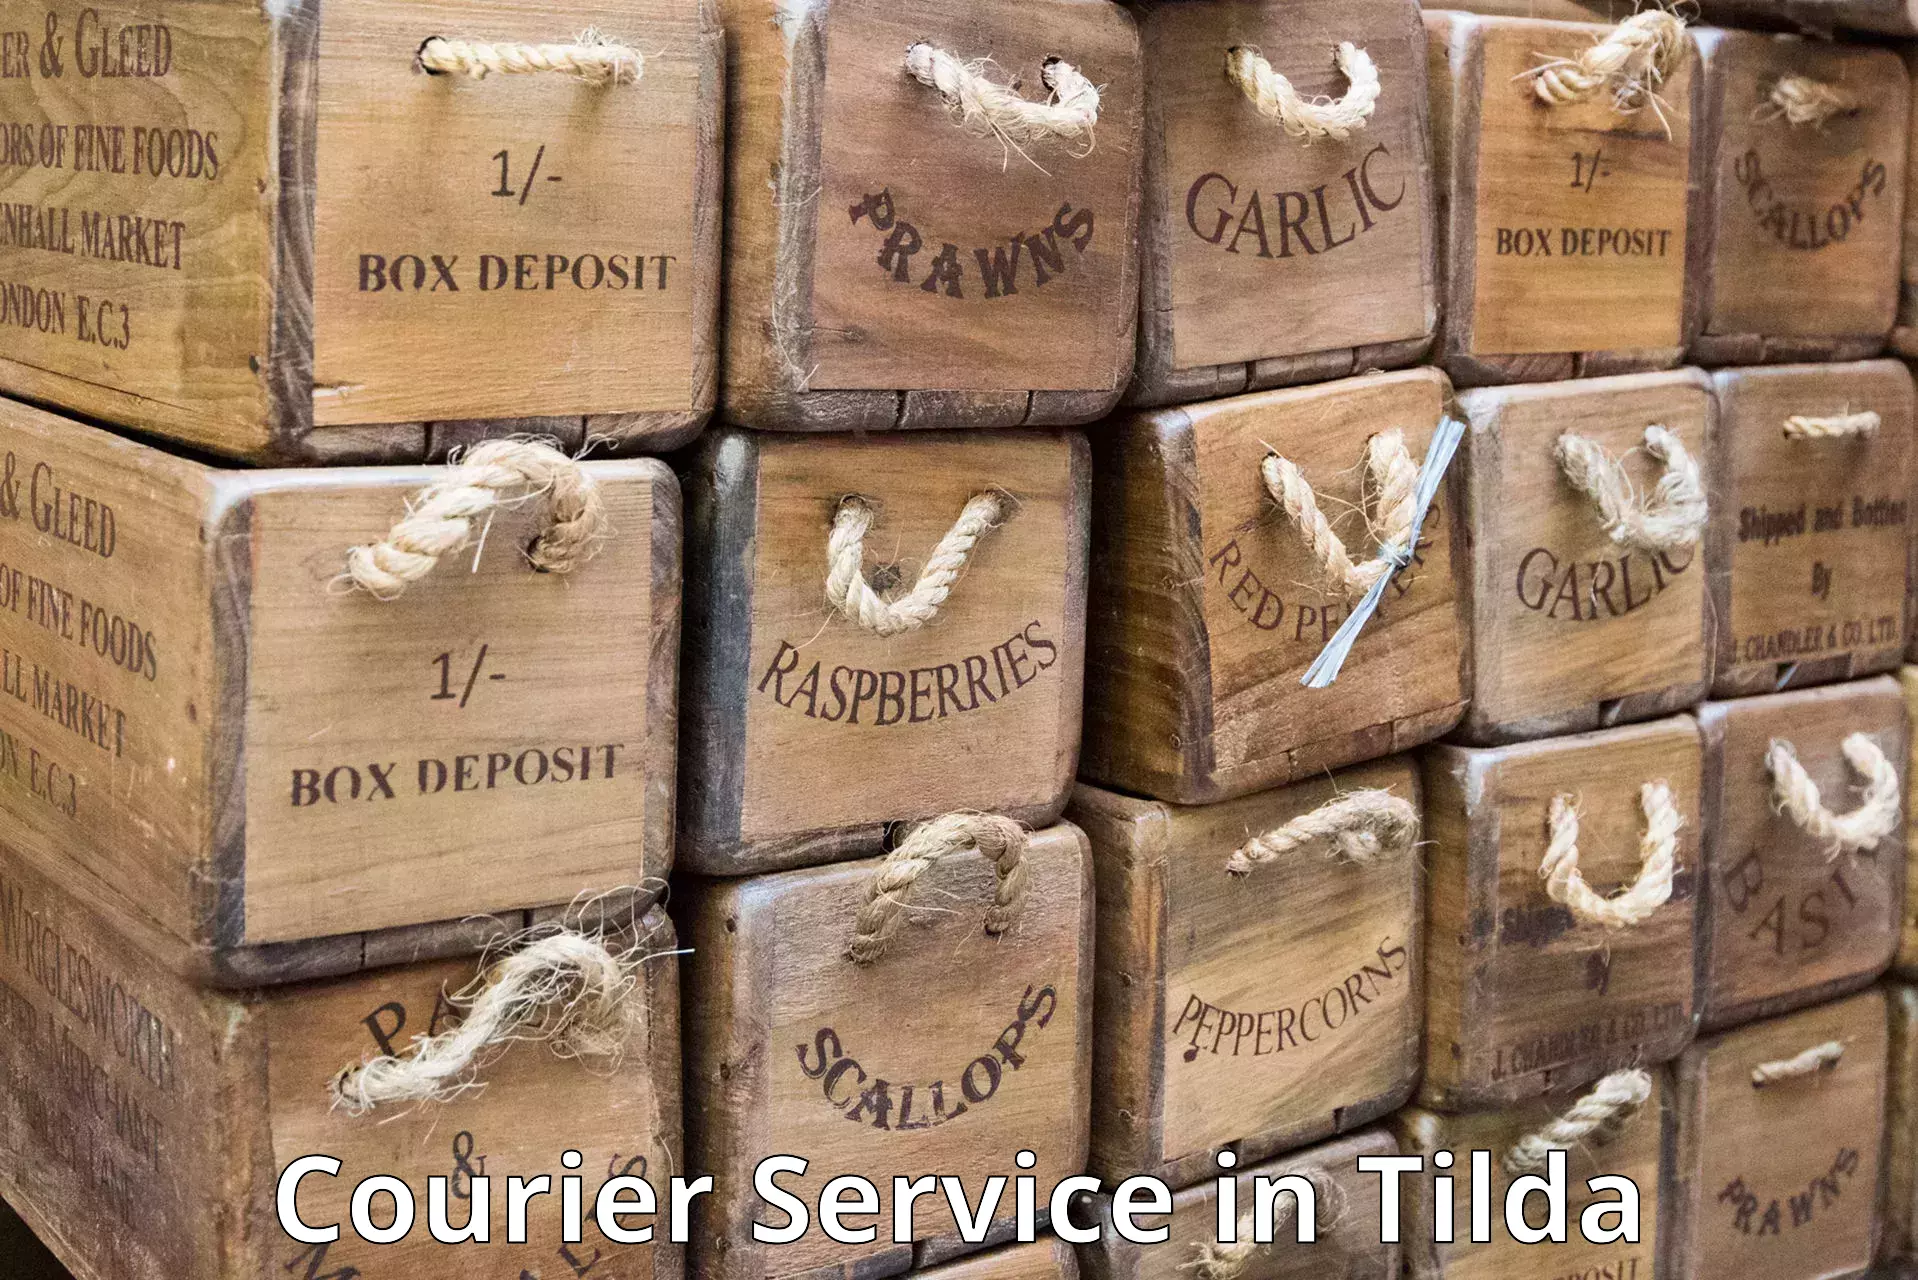 Express postal services in Tilda